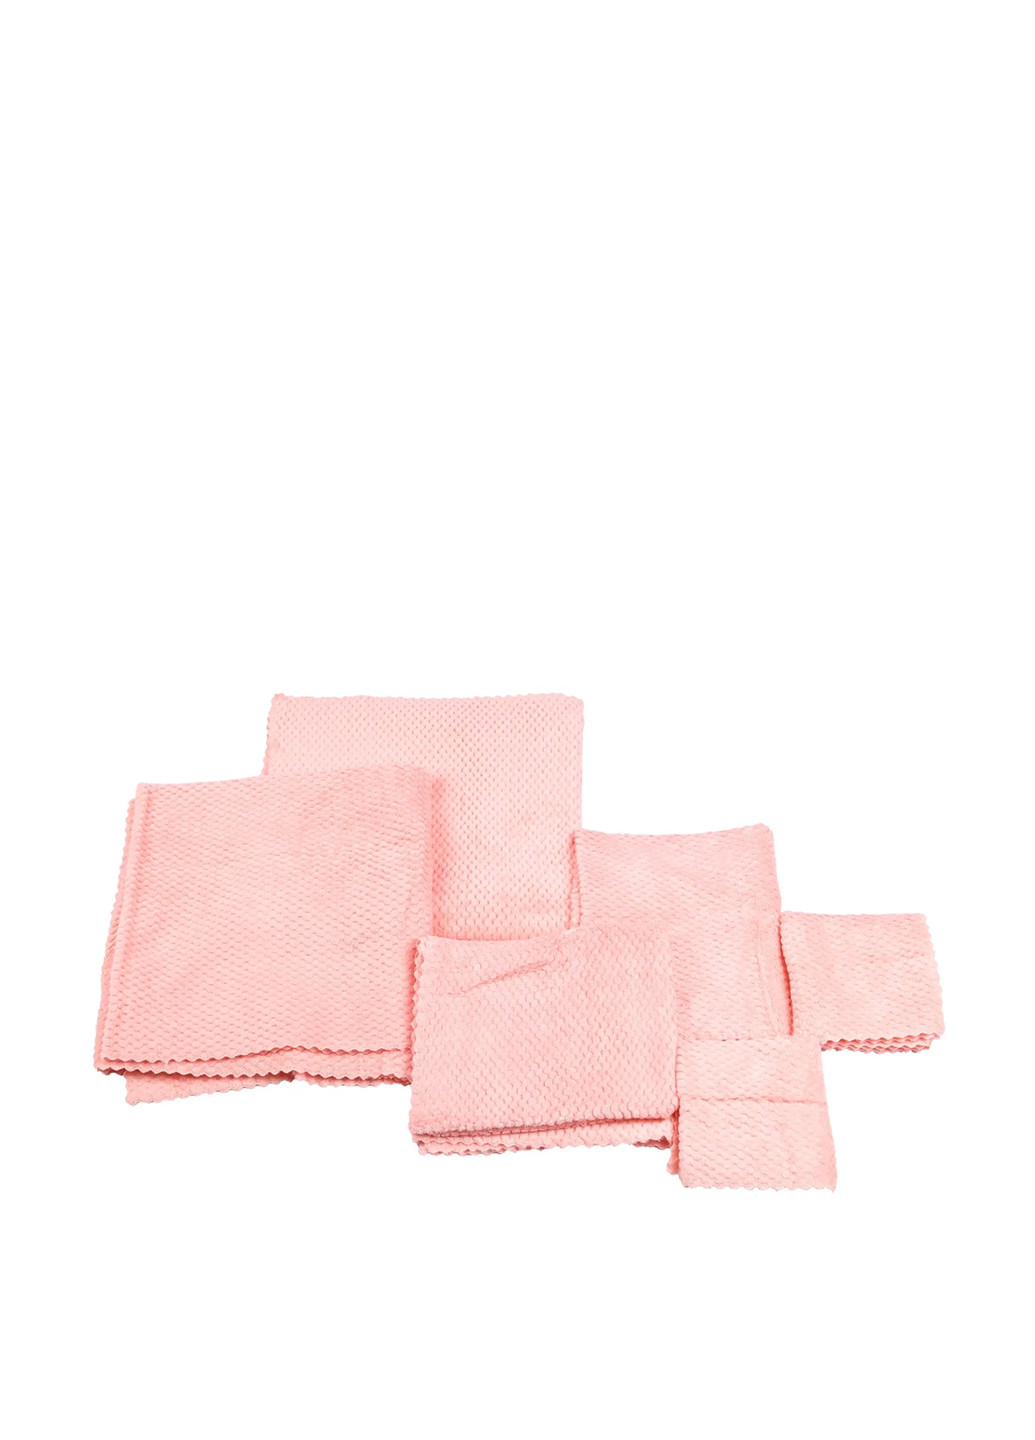 TV-magazin полотенце, 6 шт розовый производство - Китай